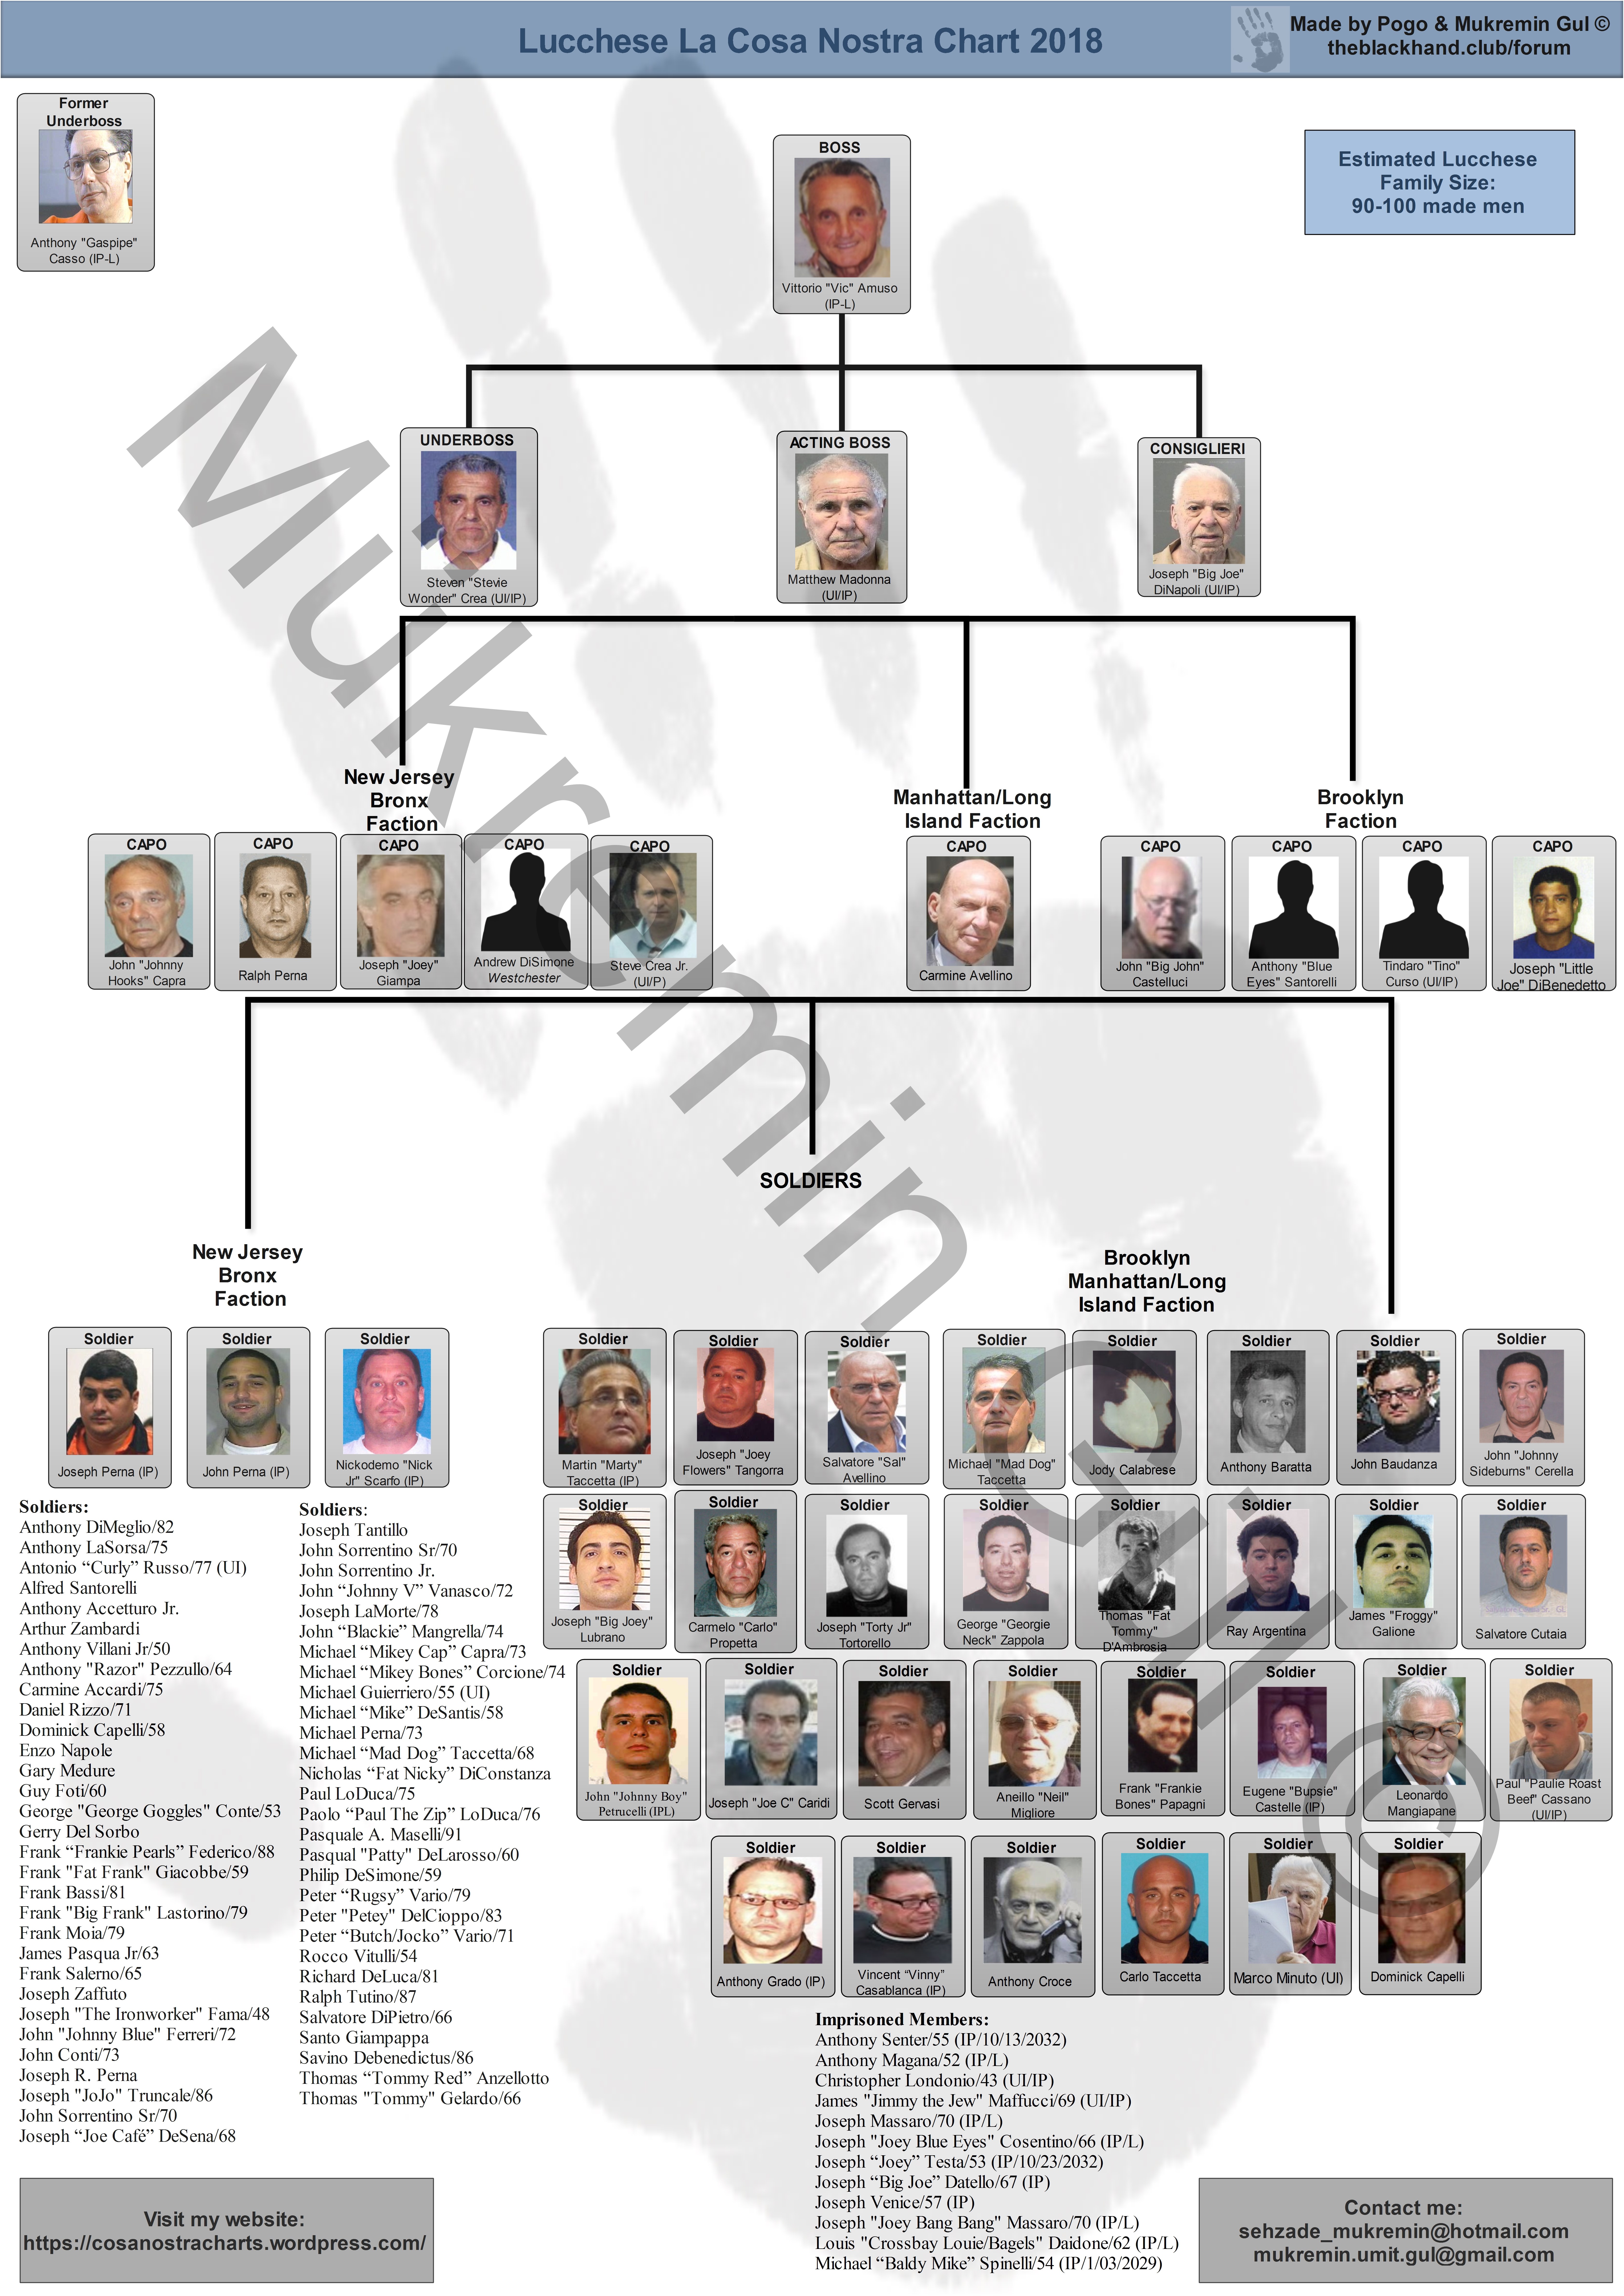 Genovese Crime Family Chart 2017